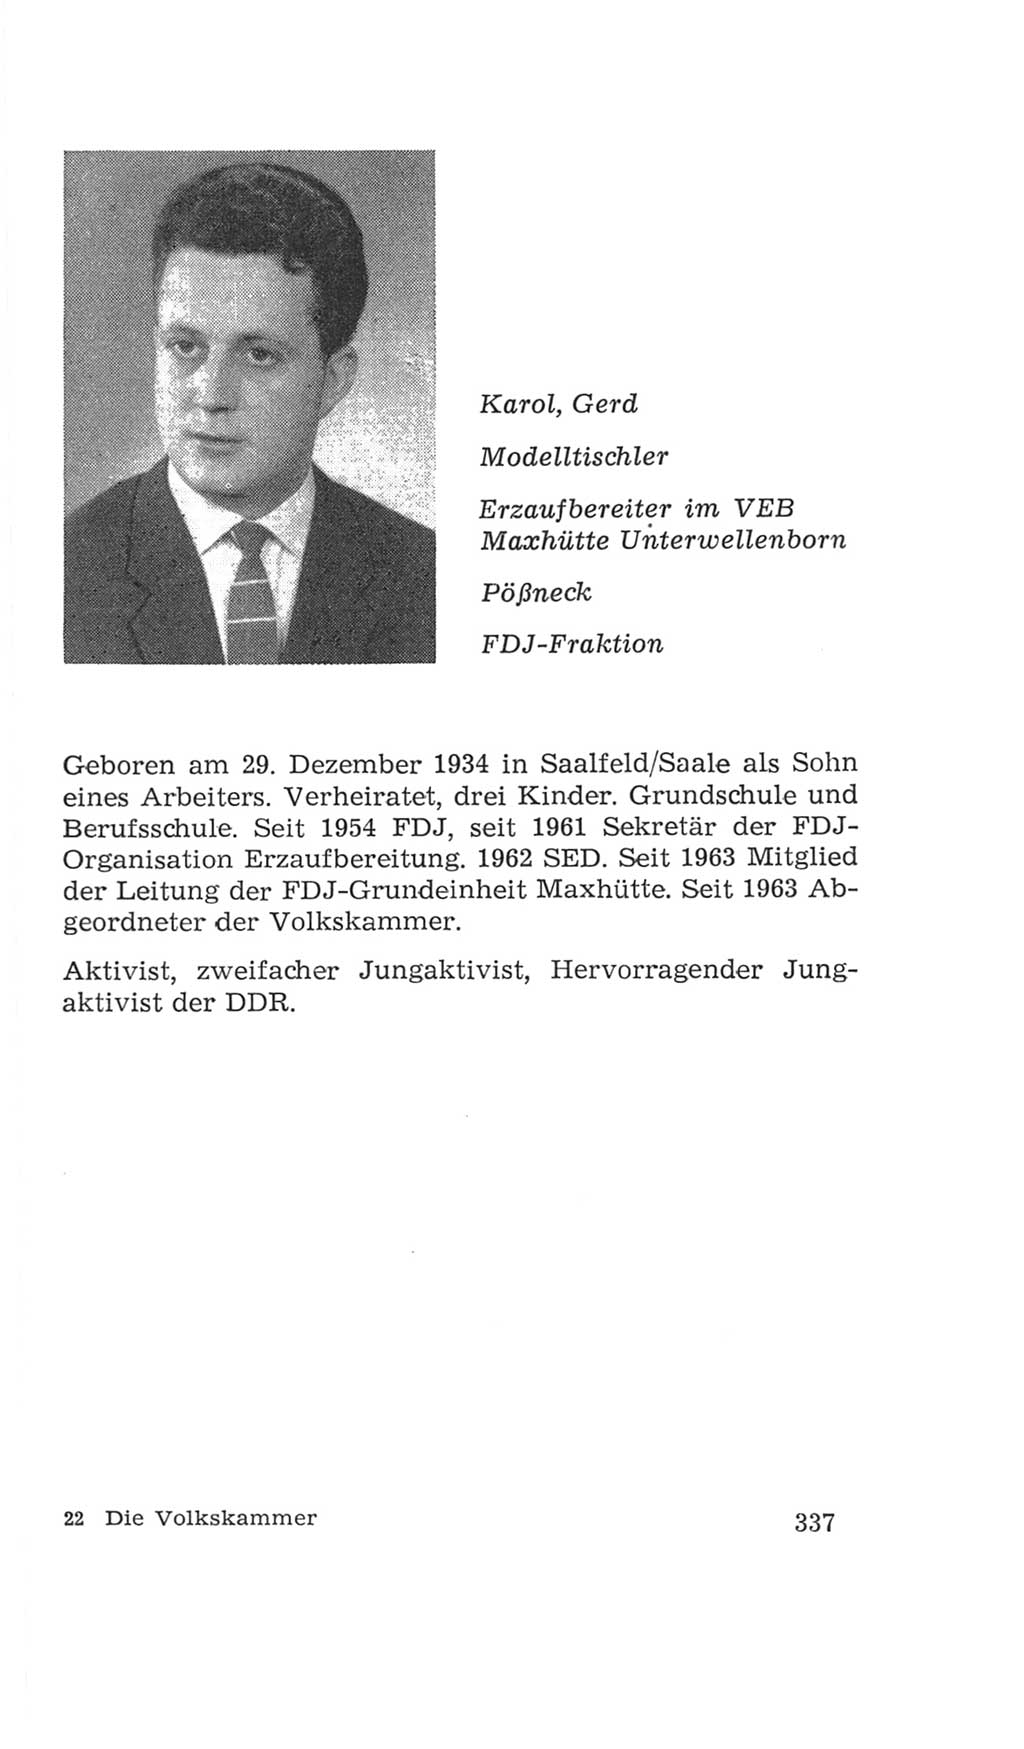 Volkskammer (VK) der Deutschen Demokratischen Republik (DDR), 4. Wahlperiode 1963-1967, Seite 337 (VK. DDR 4. WP. 1963-1967, S. 337)